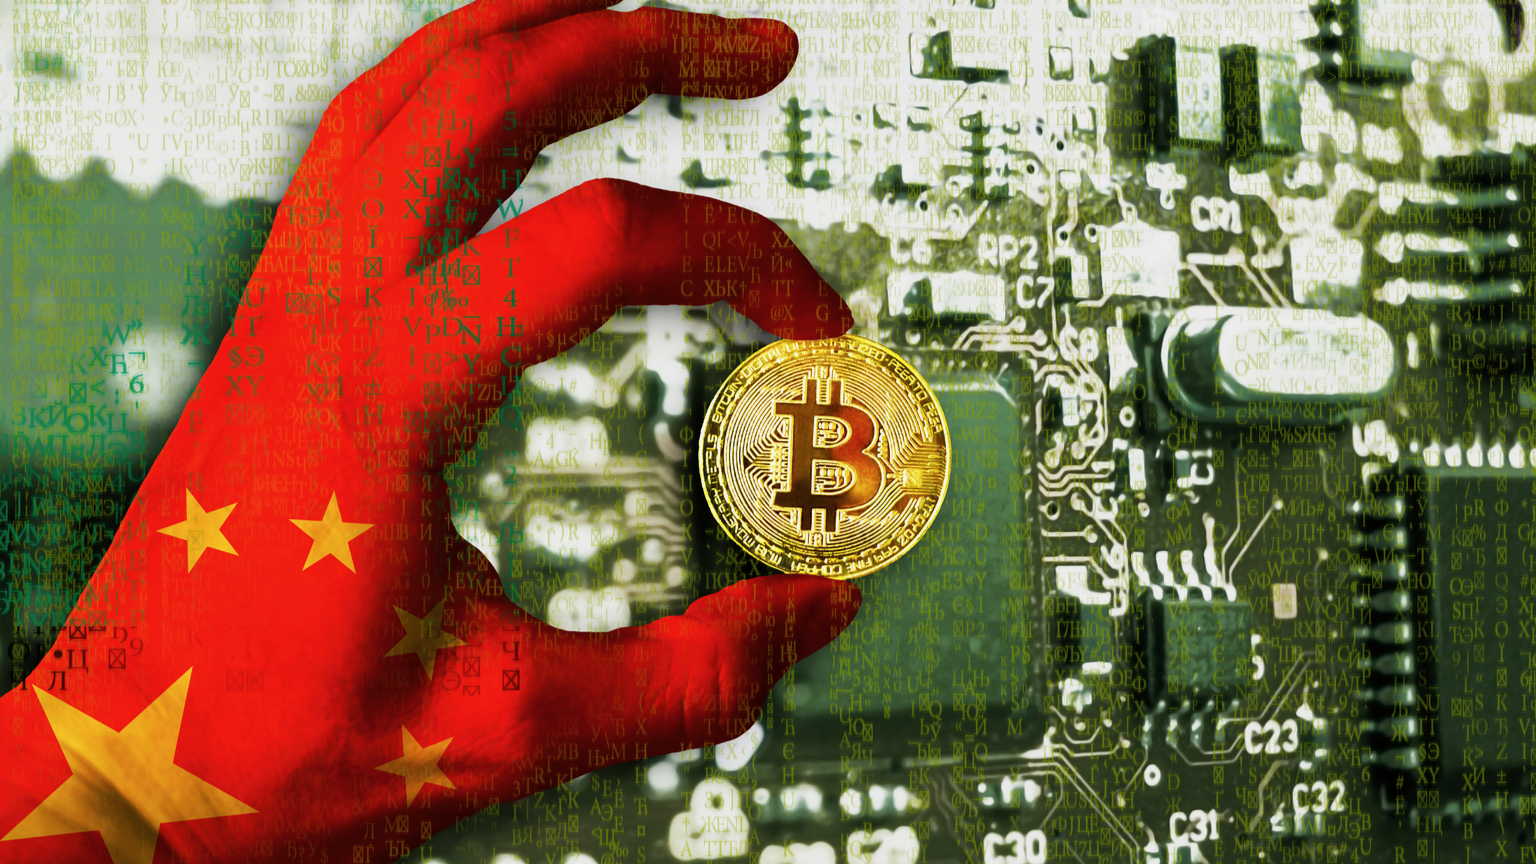 China is rethinking Bitcoin